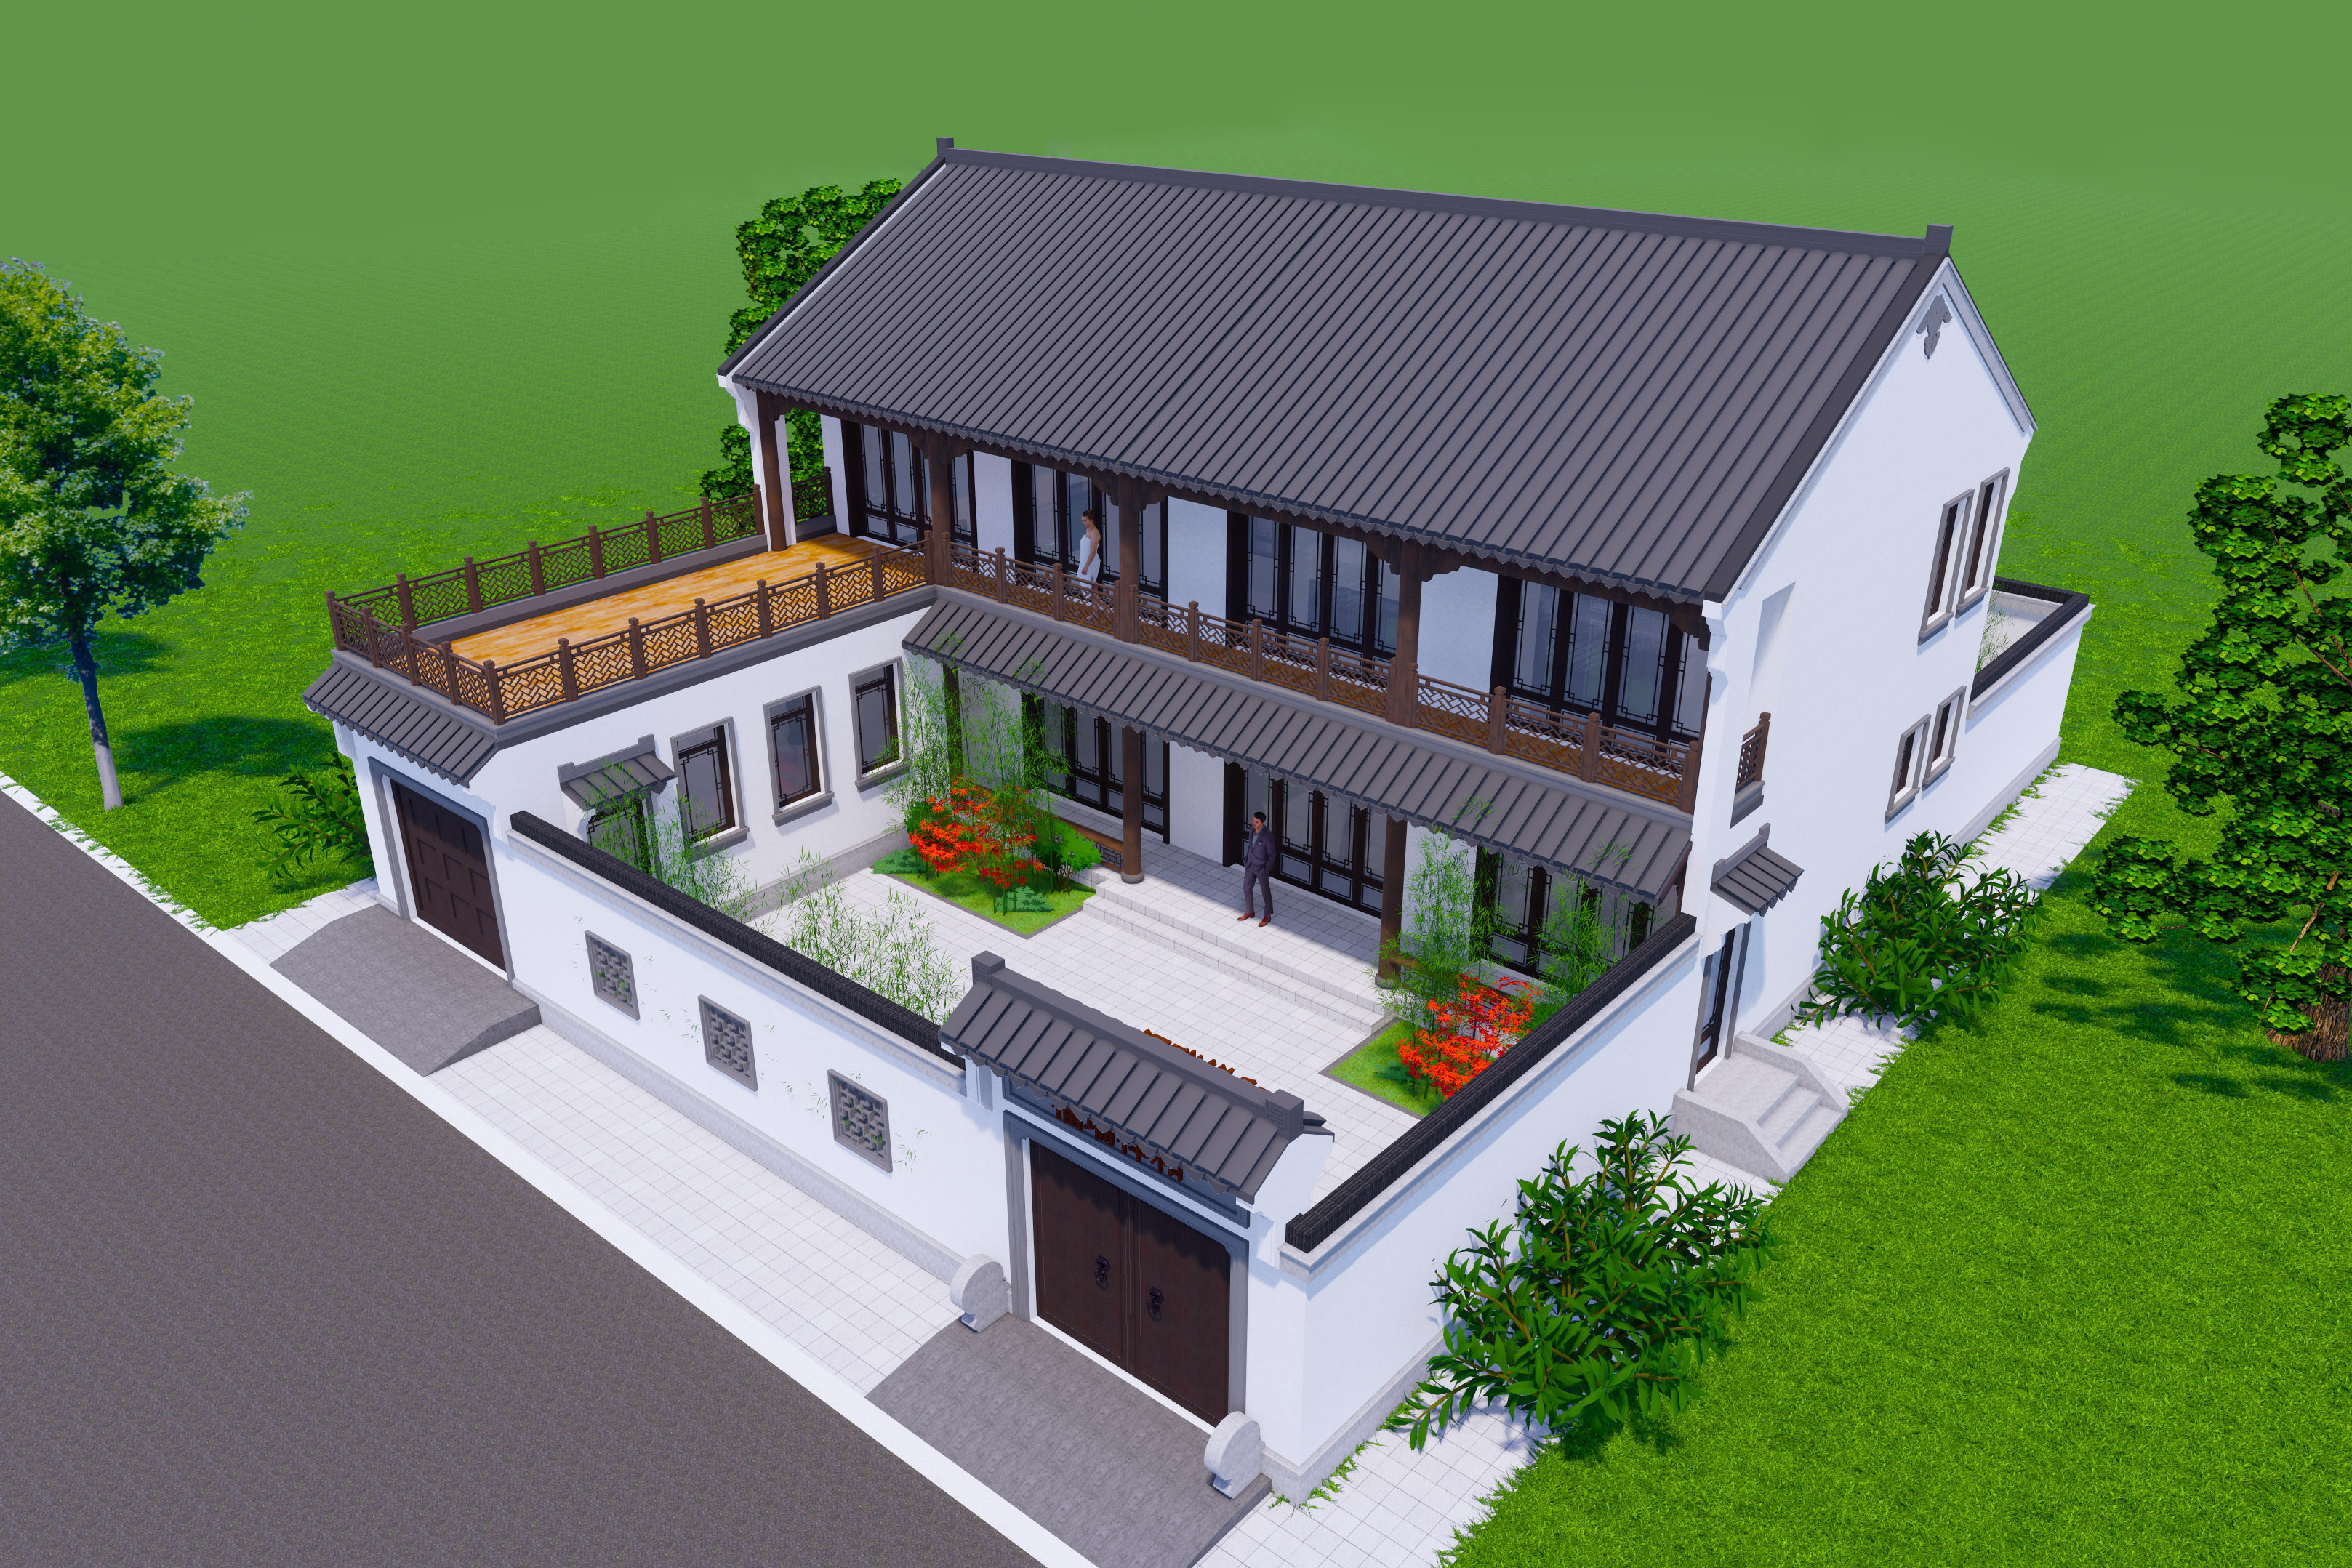 粉墙黛瓦,古风古韵,二层中式宅院改造设计!